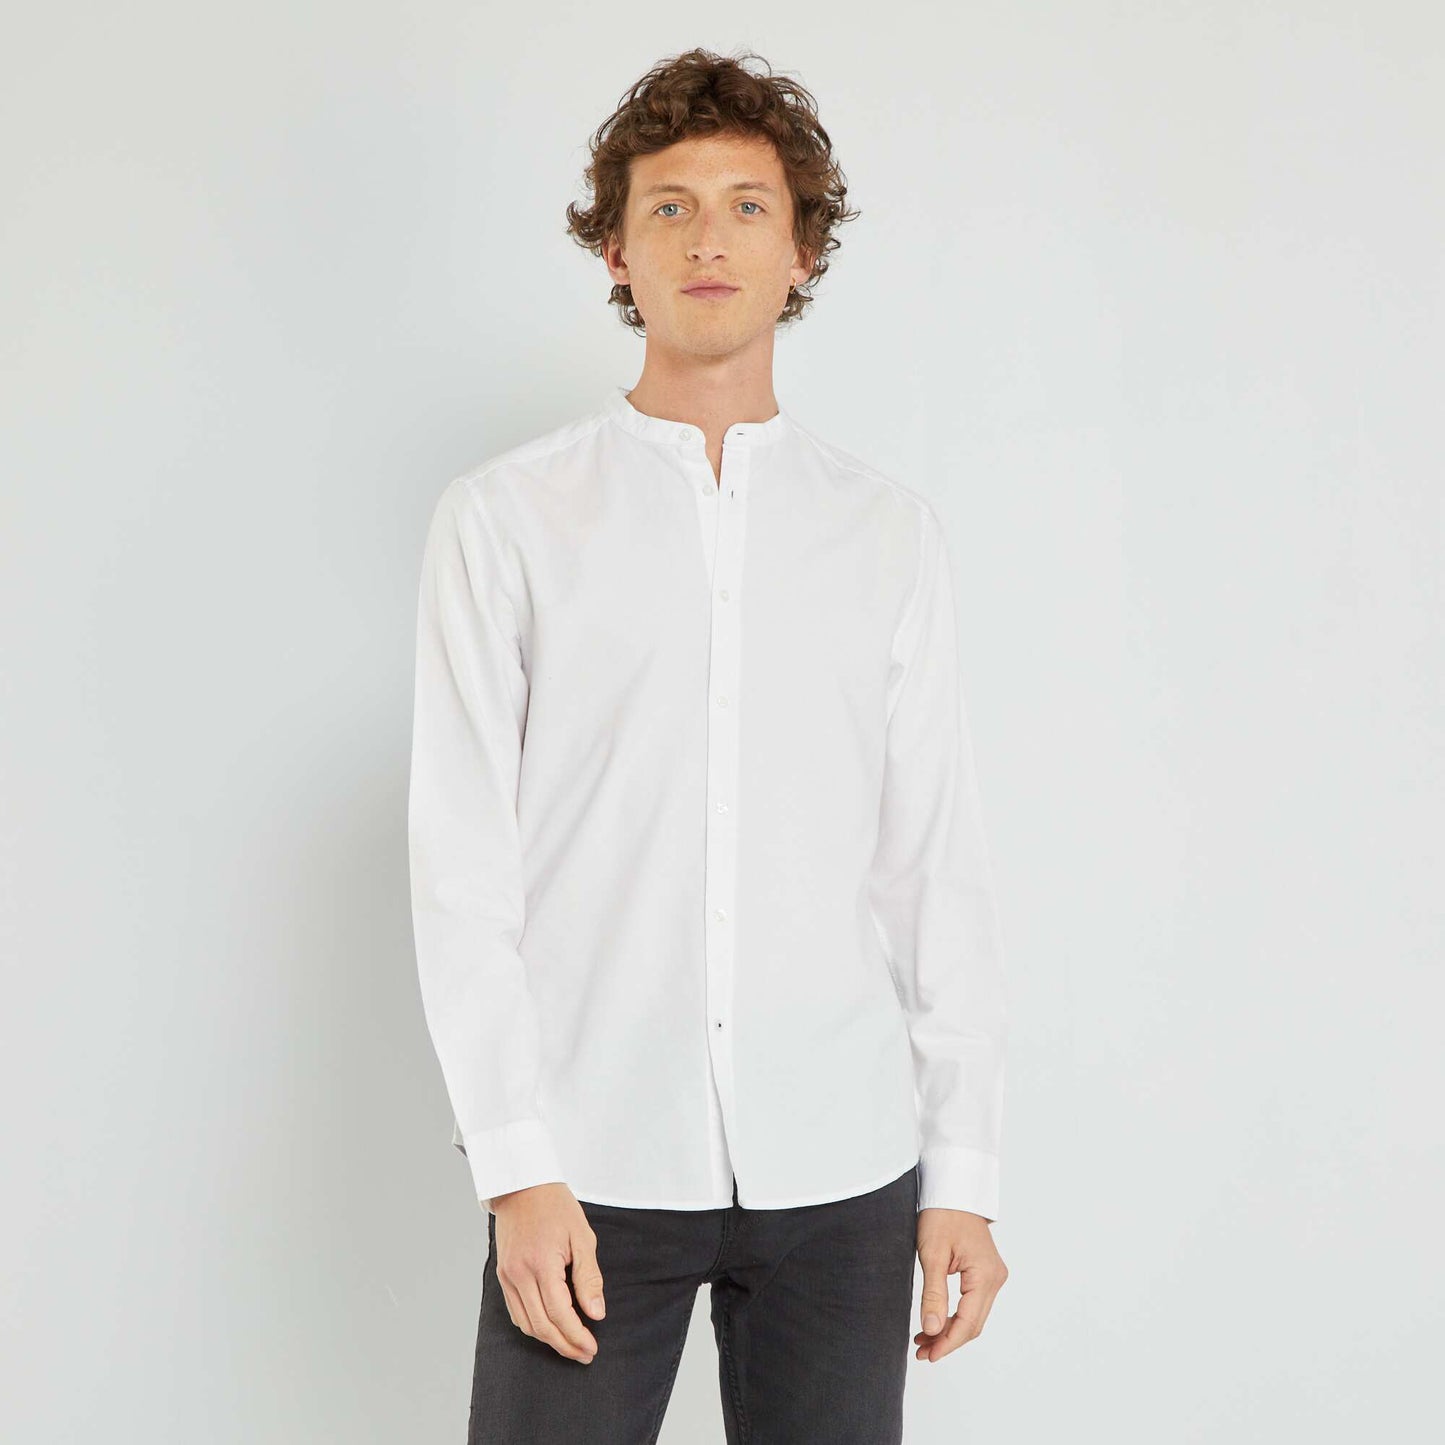 Long-sleeved shirt white